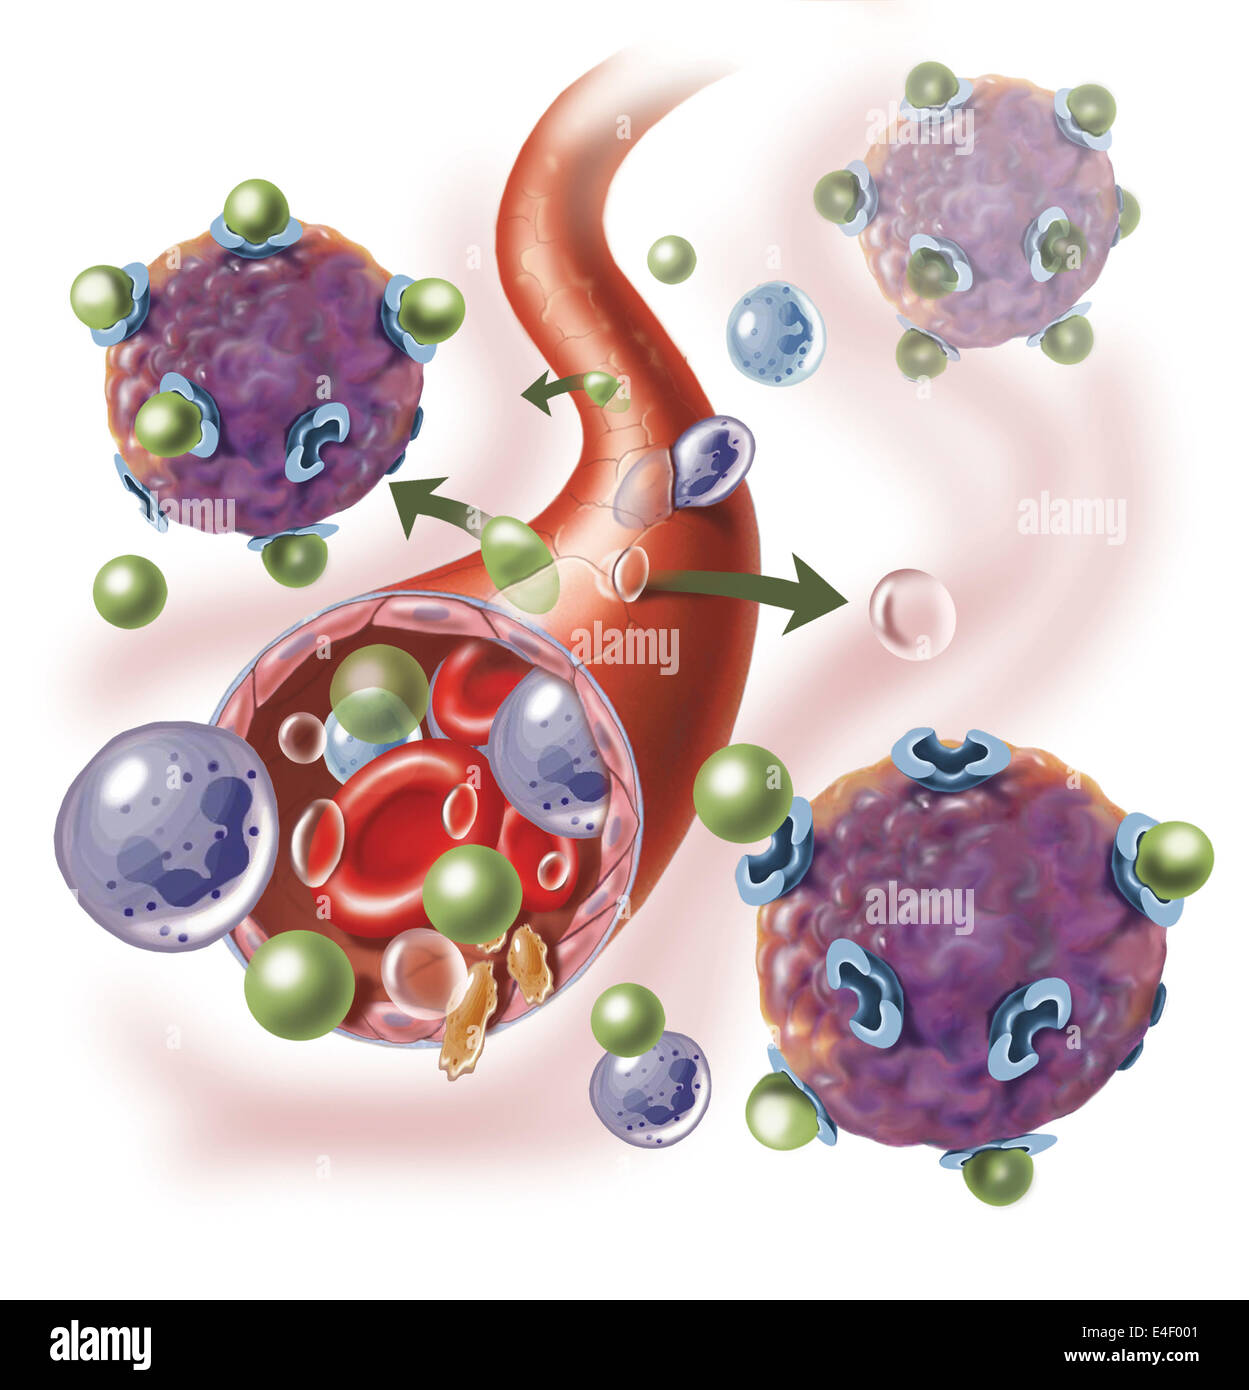 Composants d'interagir avec des vaisseaux sanguins ; le liquide intracellulaire de globules blancs, de globules rouges, l'oxygène, les plaquettes et les hormones Banque D'Images